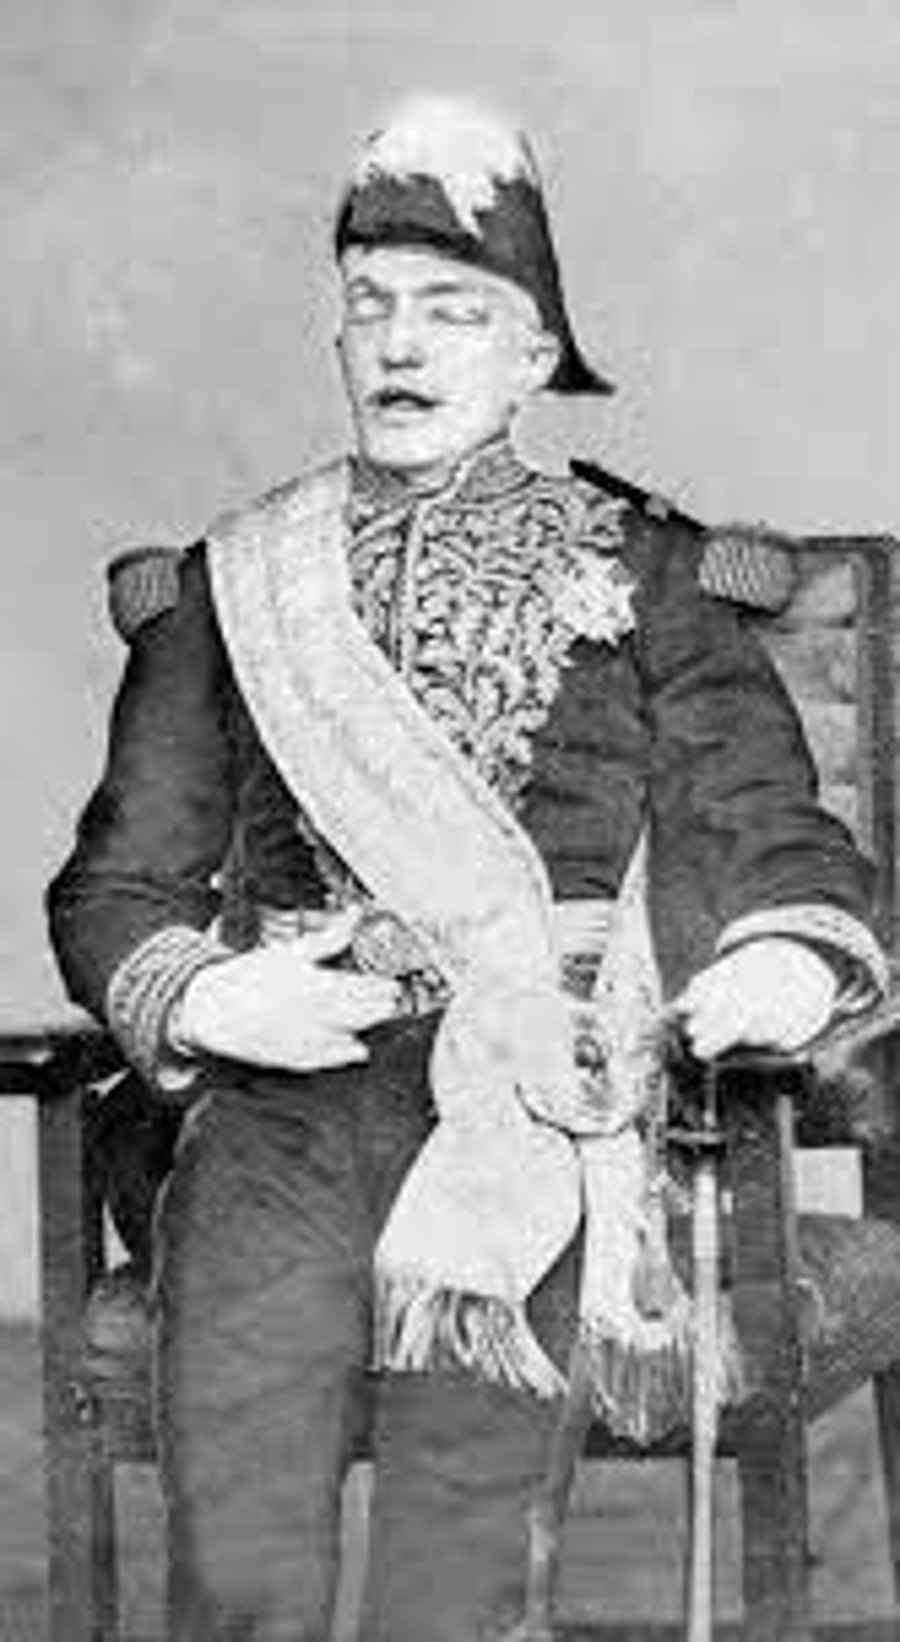 תמונתו האחרונה של גבריאל מורנו, השליט העריץ של אקוודור. כאן הוא יושב בכסאו ובבגדי מלכותו בטקס אחרי מותו, לאחר שהנחה בצוואתו לעשות כך. 1875